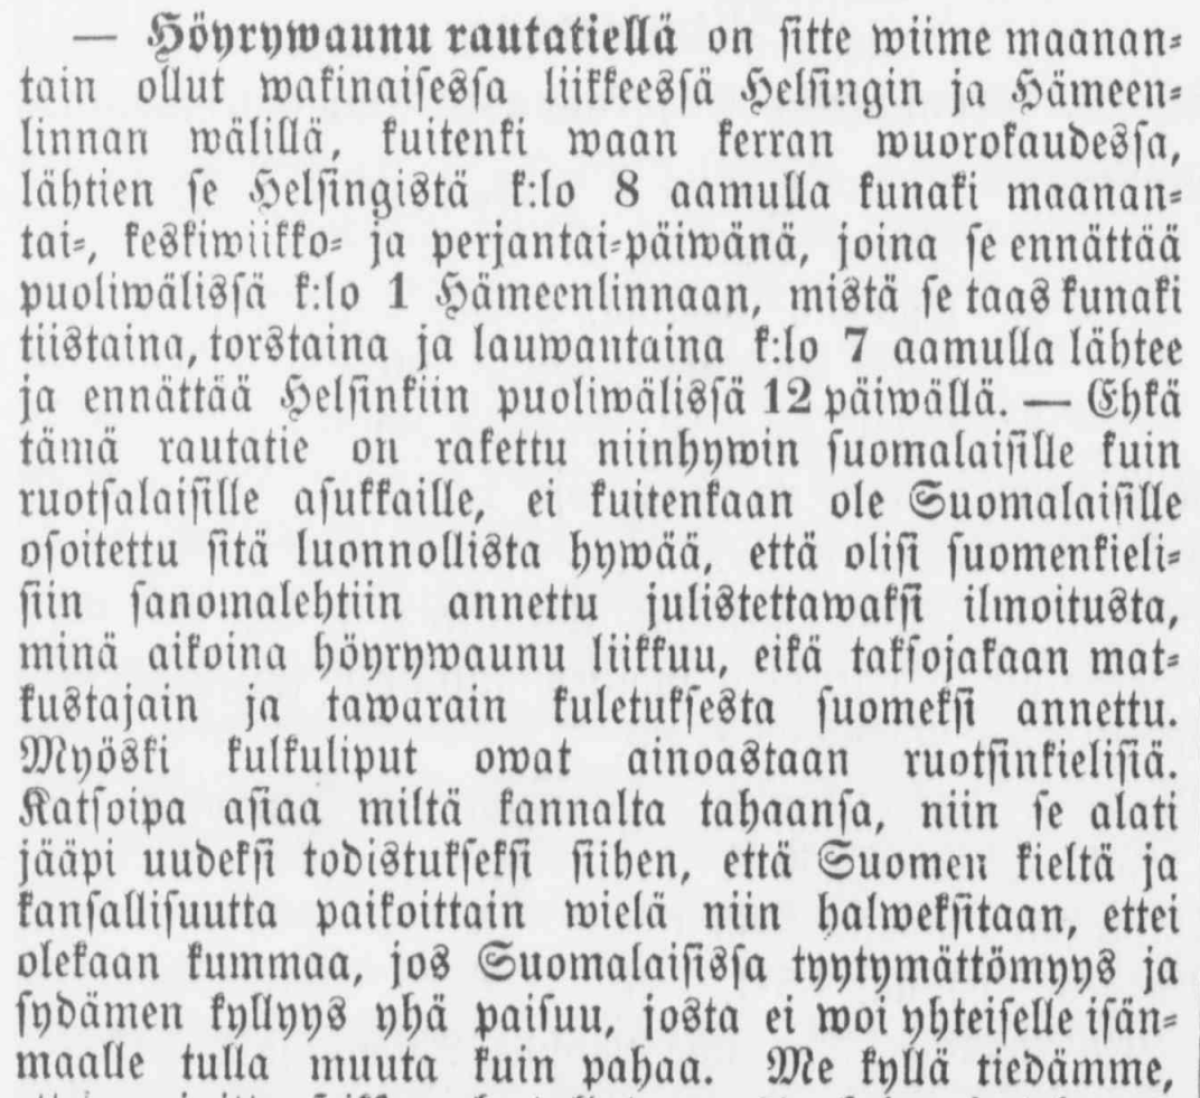 En kommentar om språkproblemen i anknytning till starten av järnvägstrafiken i tidningen Suometar år 1862